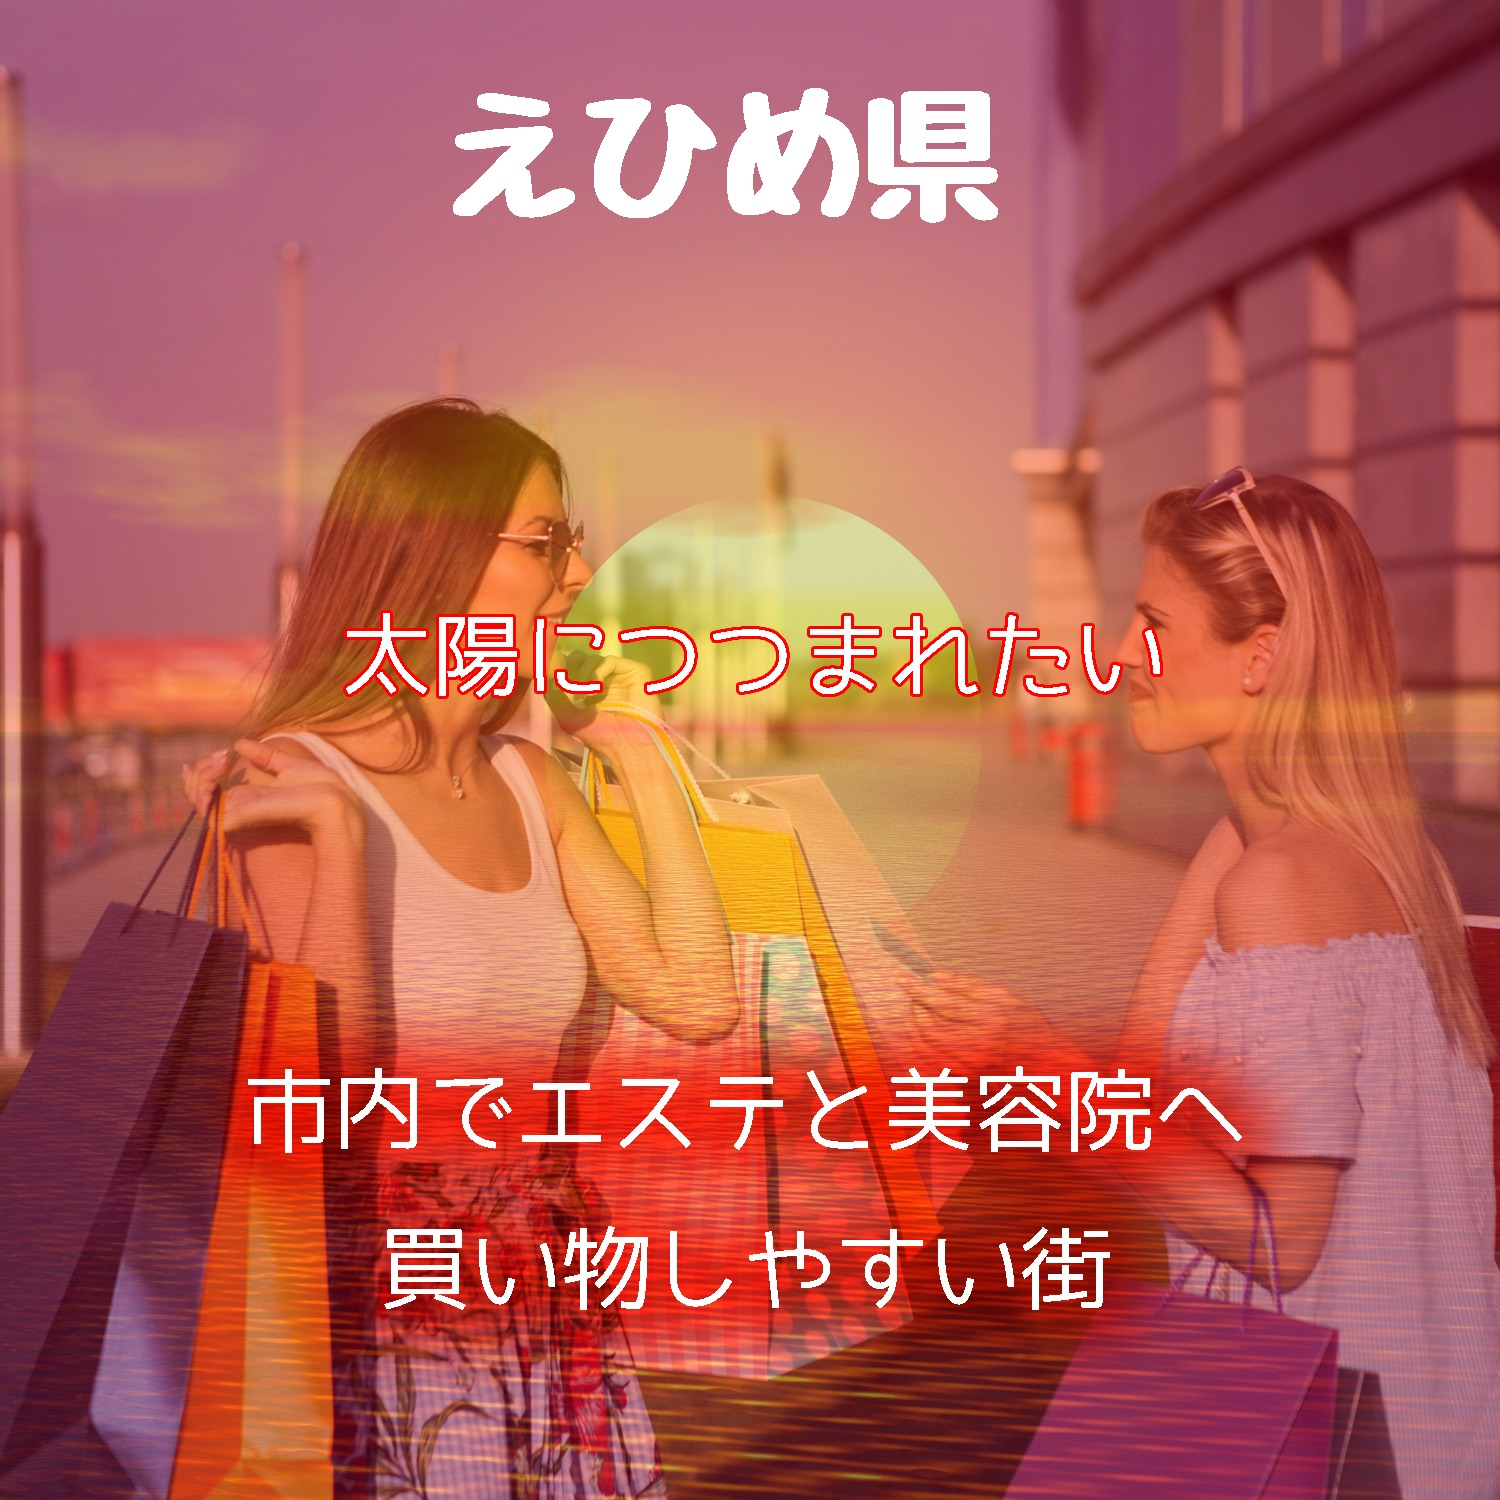 【松山市と今治市はお店が多い】愛媛県でデパコスブランドが安い口コミがおすすめのコスメショップを探す